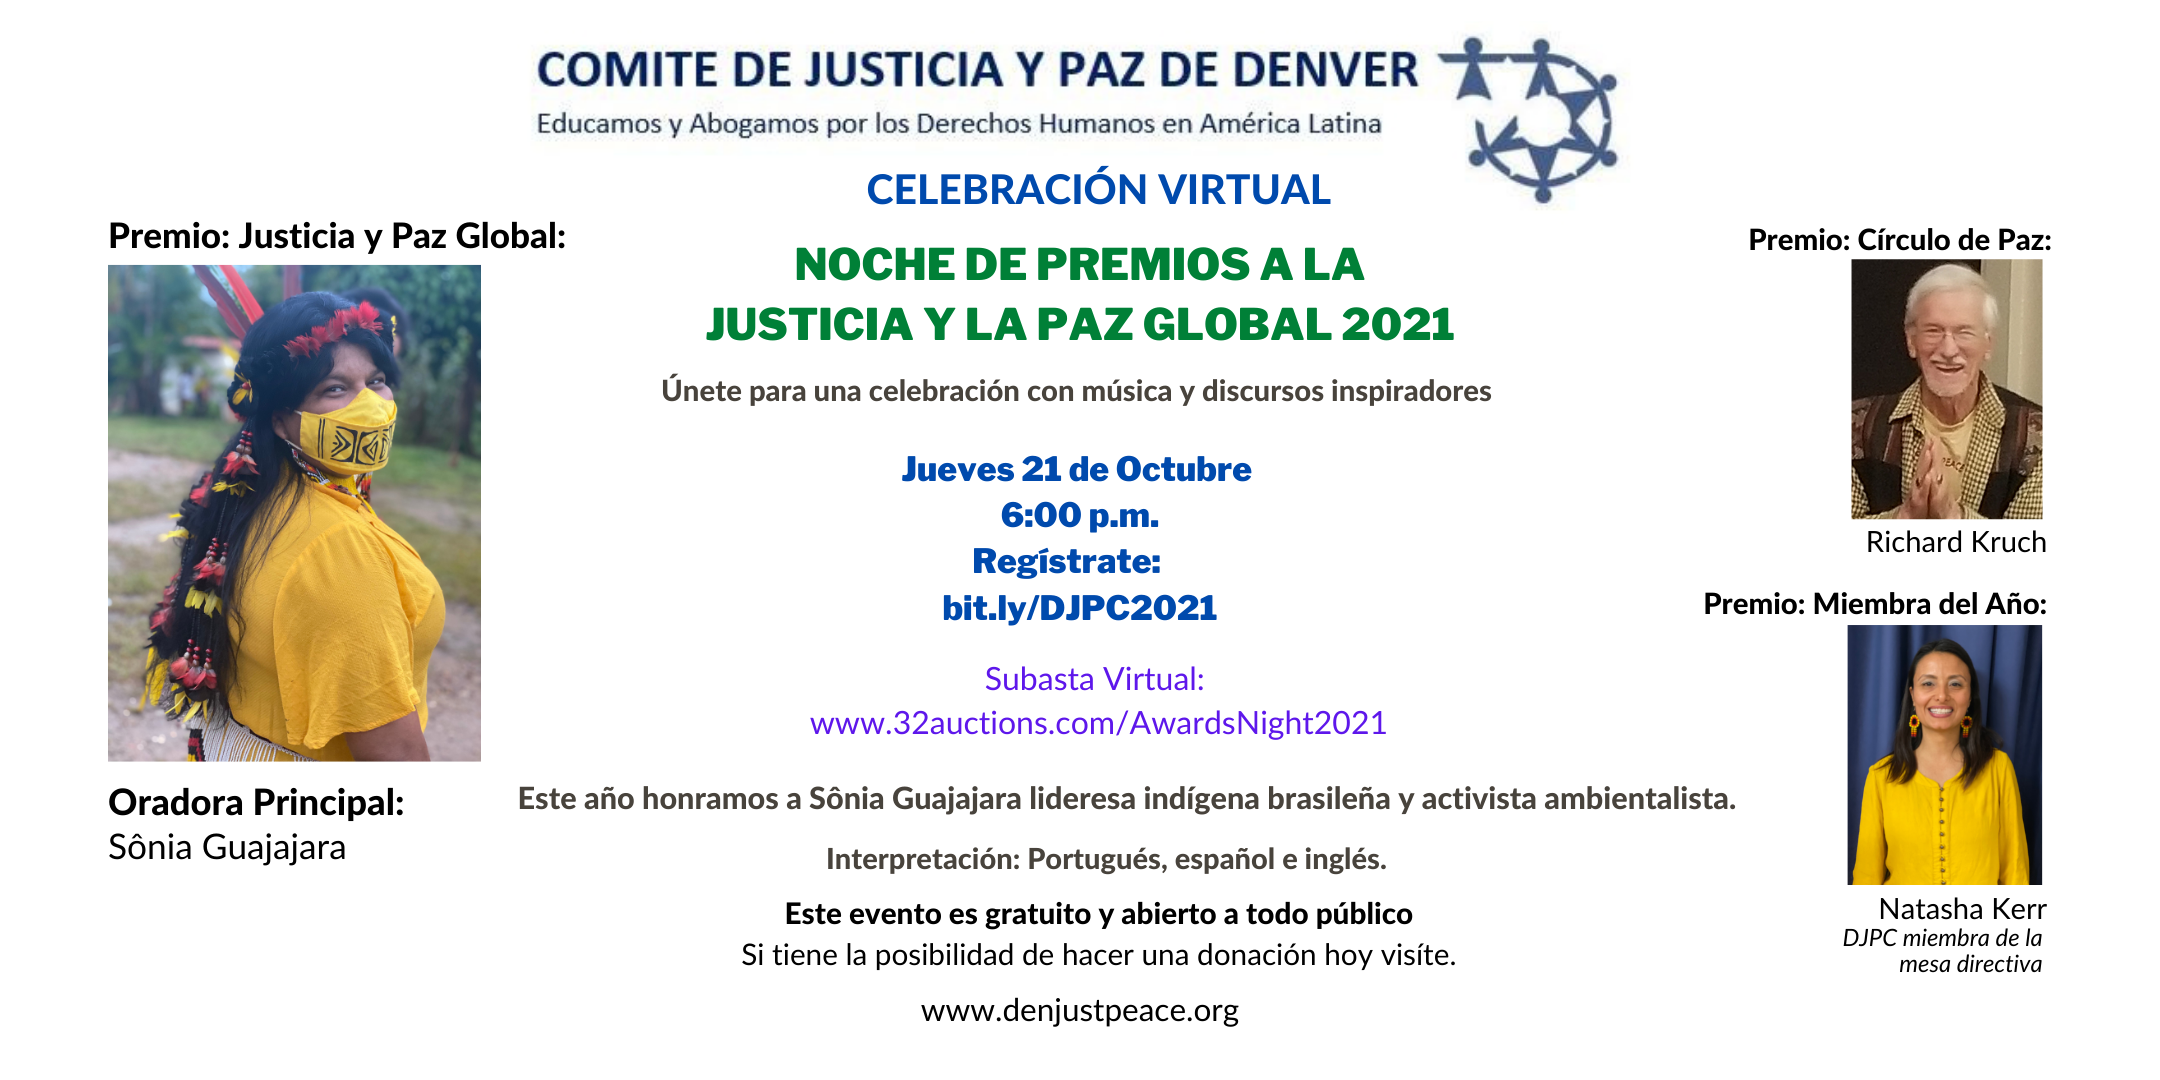 Invitación: Noche de Premios a la Justicia y la Paz Global 2021: Jueves 21 de Octubre a las 18:00 horas.